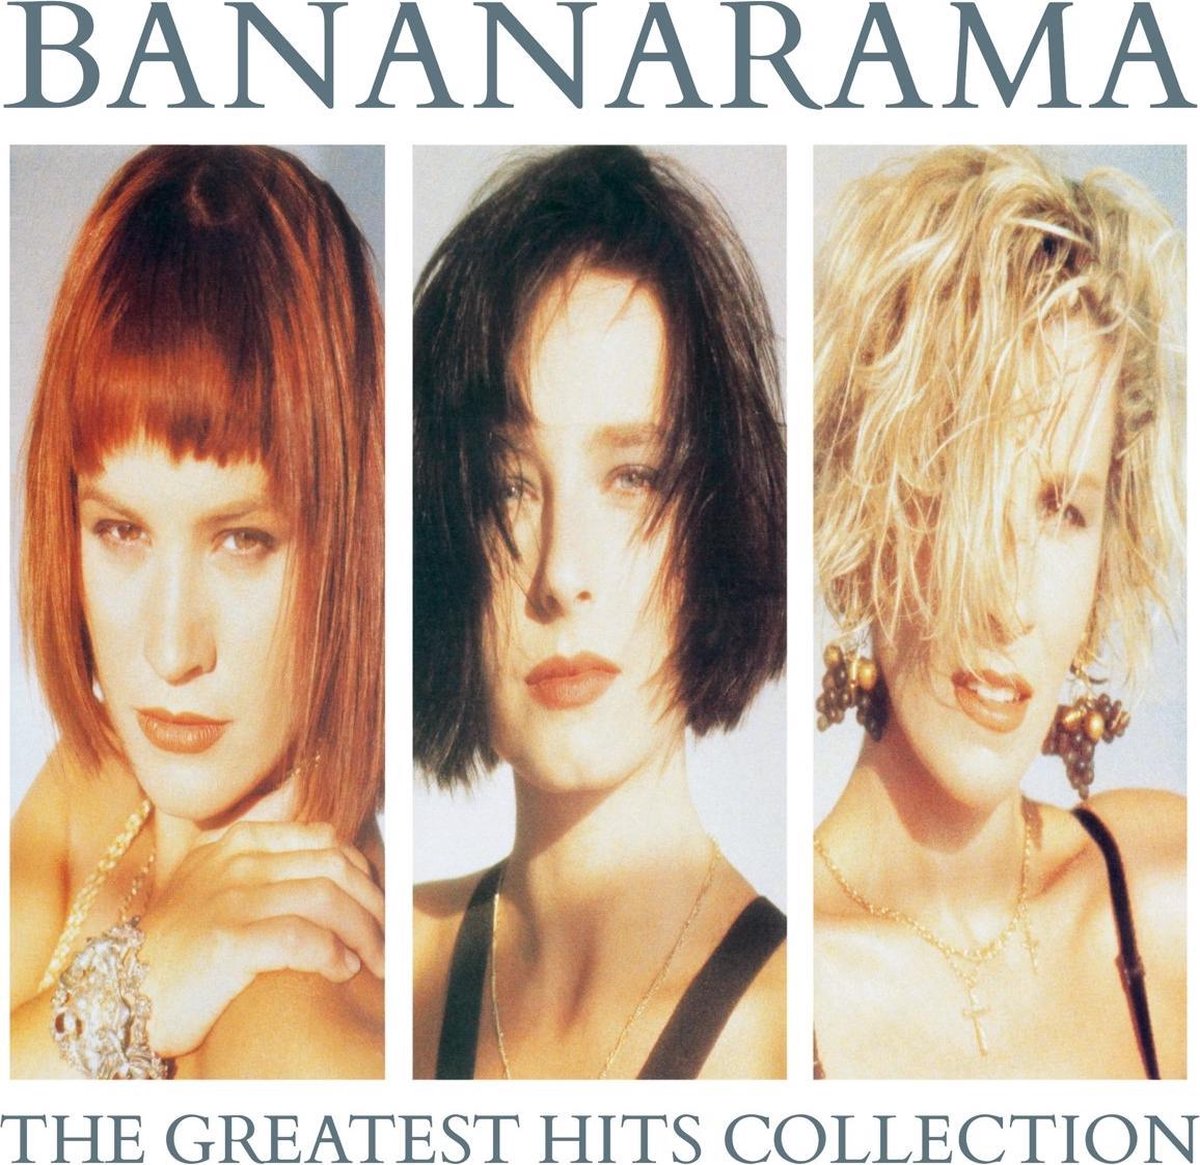 Bananarama - The Greatest Hits Collection (CD) - Bananarama